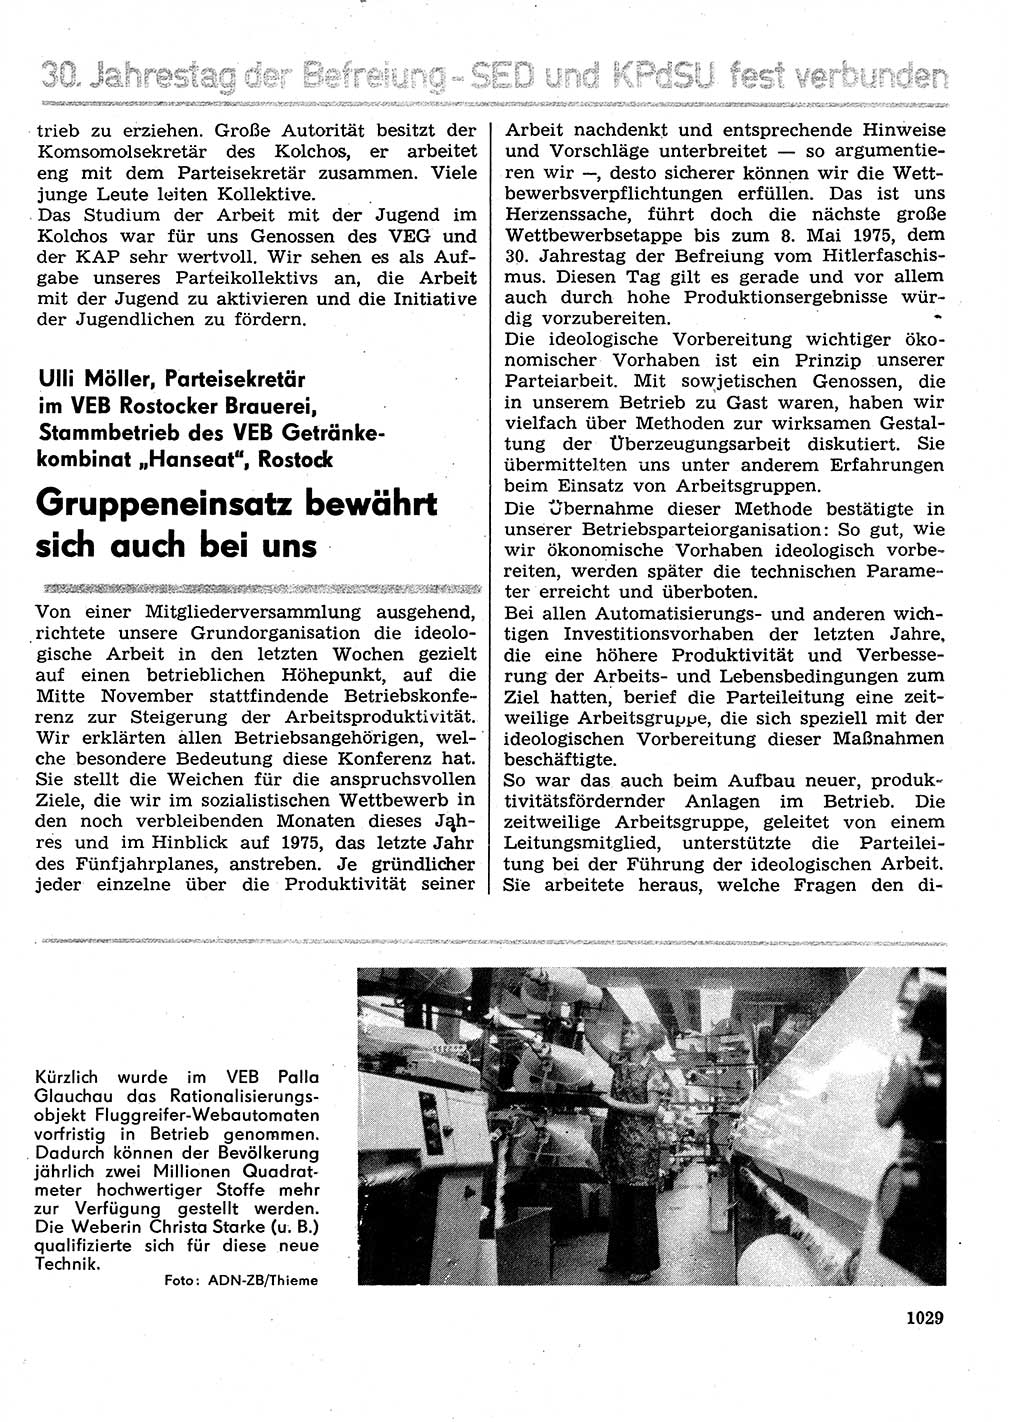 Neuer Weg (NW), Organ des Zentralkomitees (ZK) der SED (Sozialistische Einheitspartei Deutschlands) für Fragen des Parteilebens, 29. Jahrgang [Deutsche Demokratische Republik (DDR)] 1974, Seite 1029 (NW ZK SED DDR 1974, S. 1029)